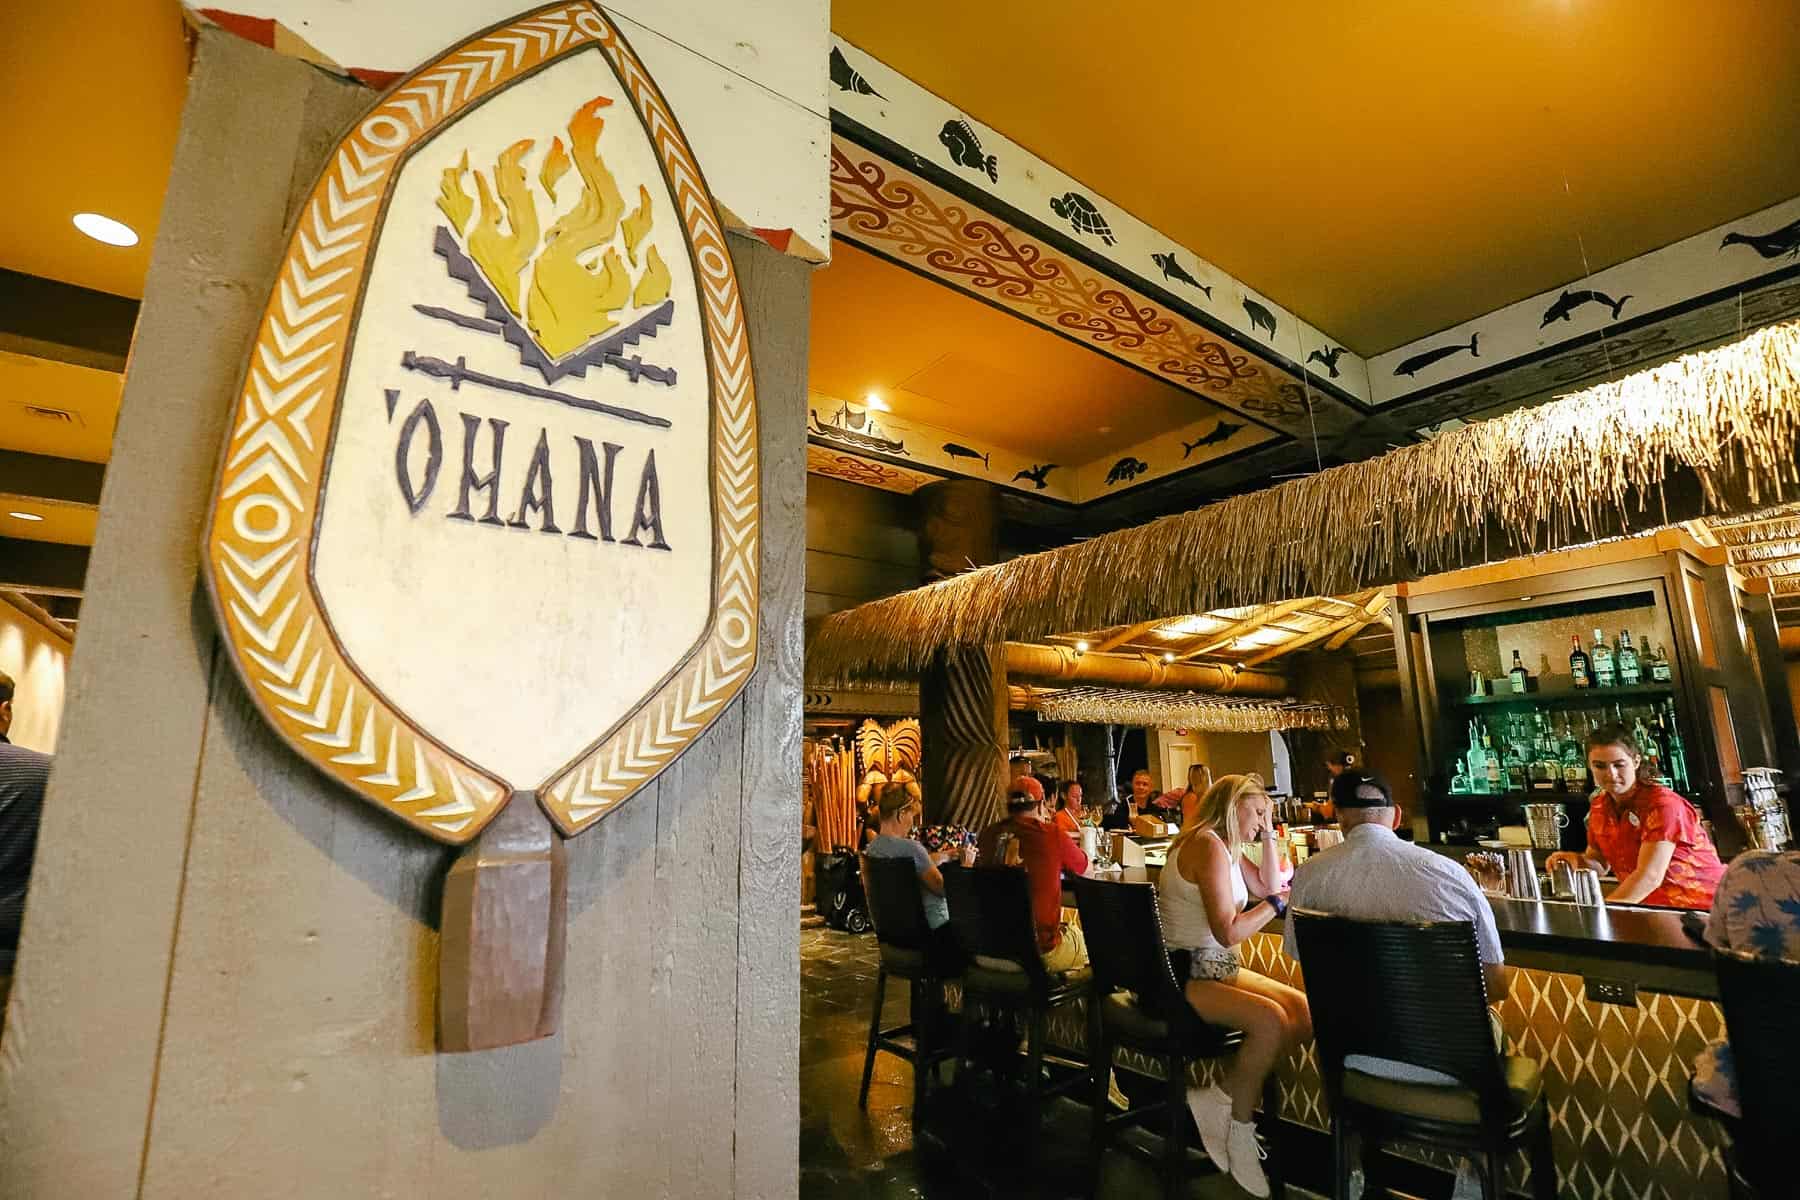 How to Get to 'Ohana